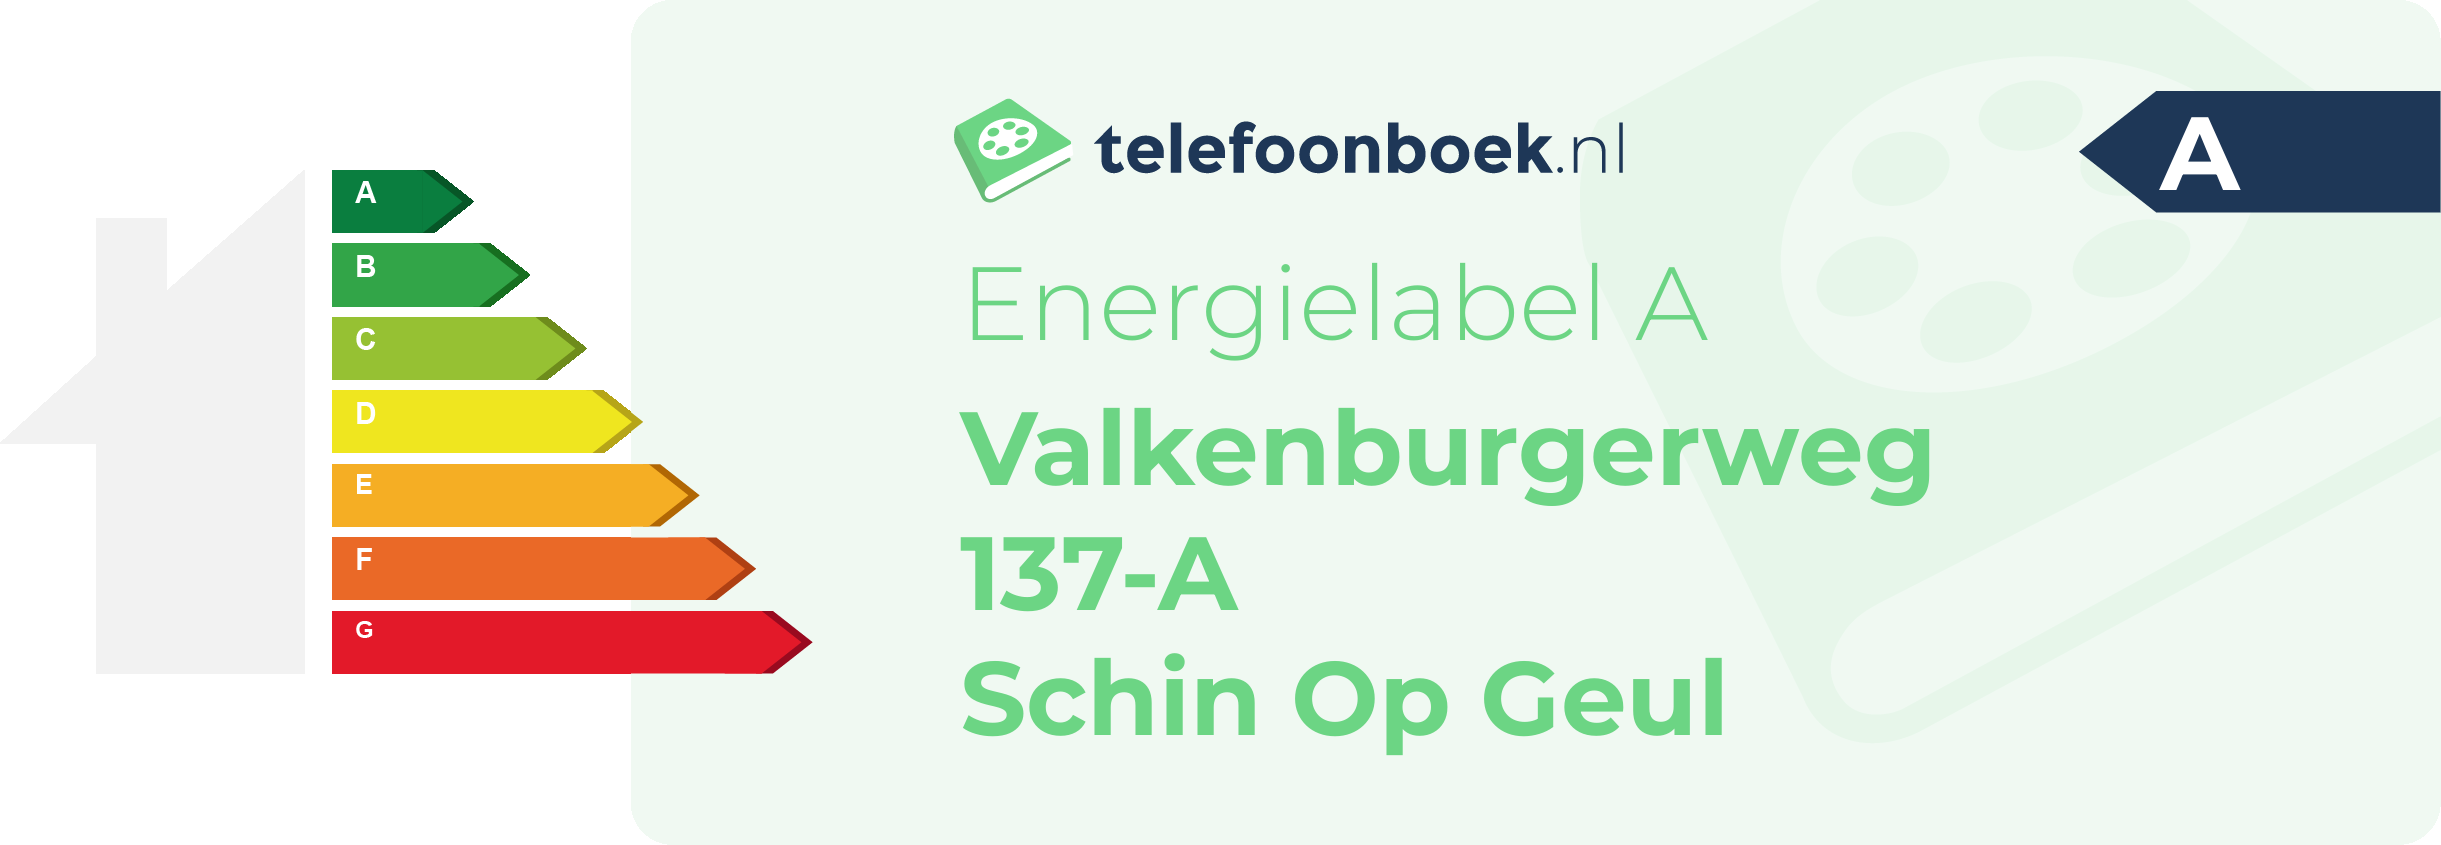 Energielabel Valkenburgerweg 137-A Schin Op Geul